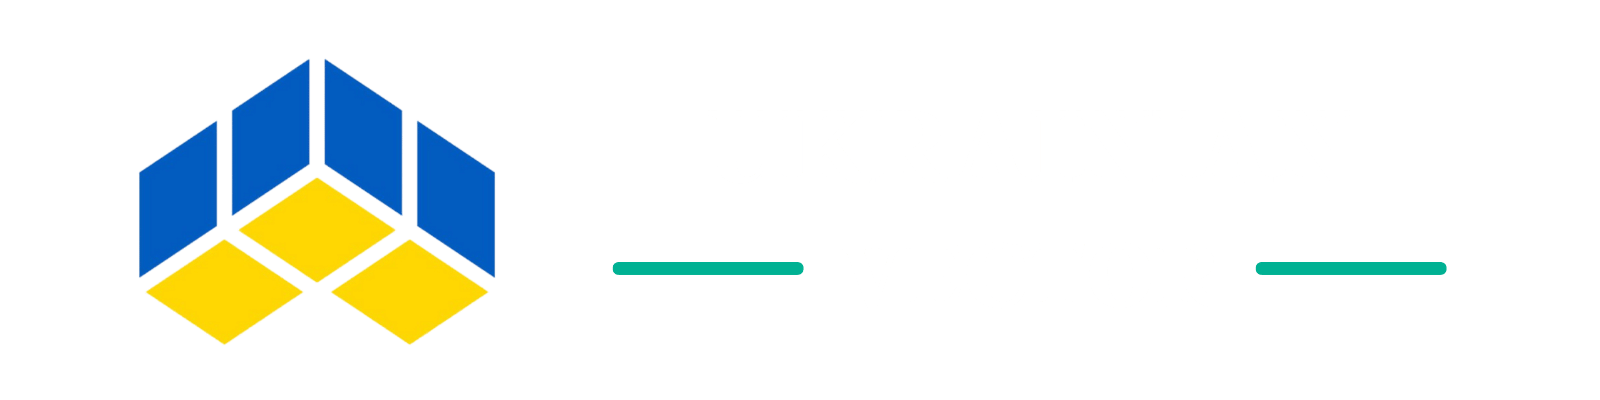 Ukrainian Vector